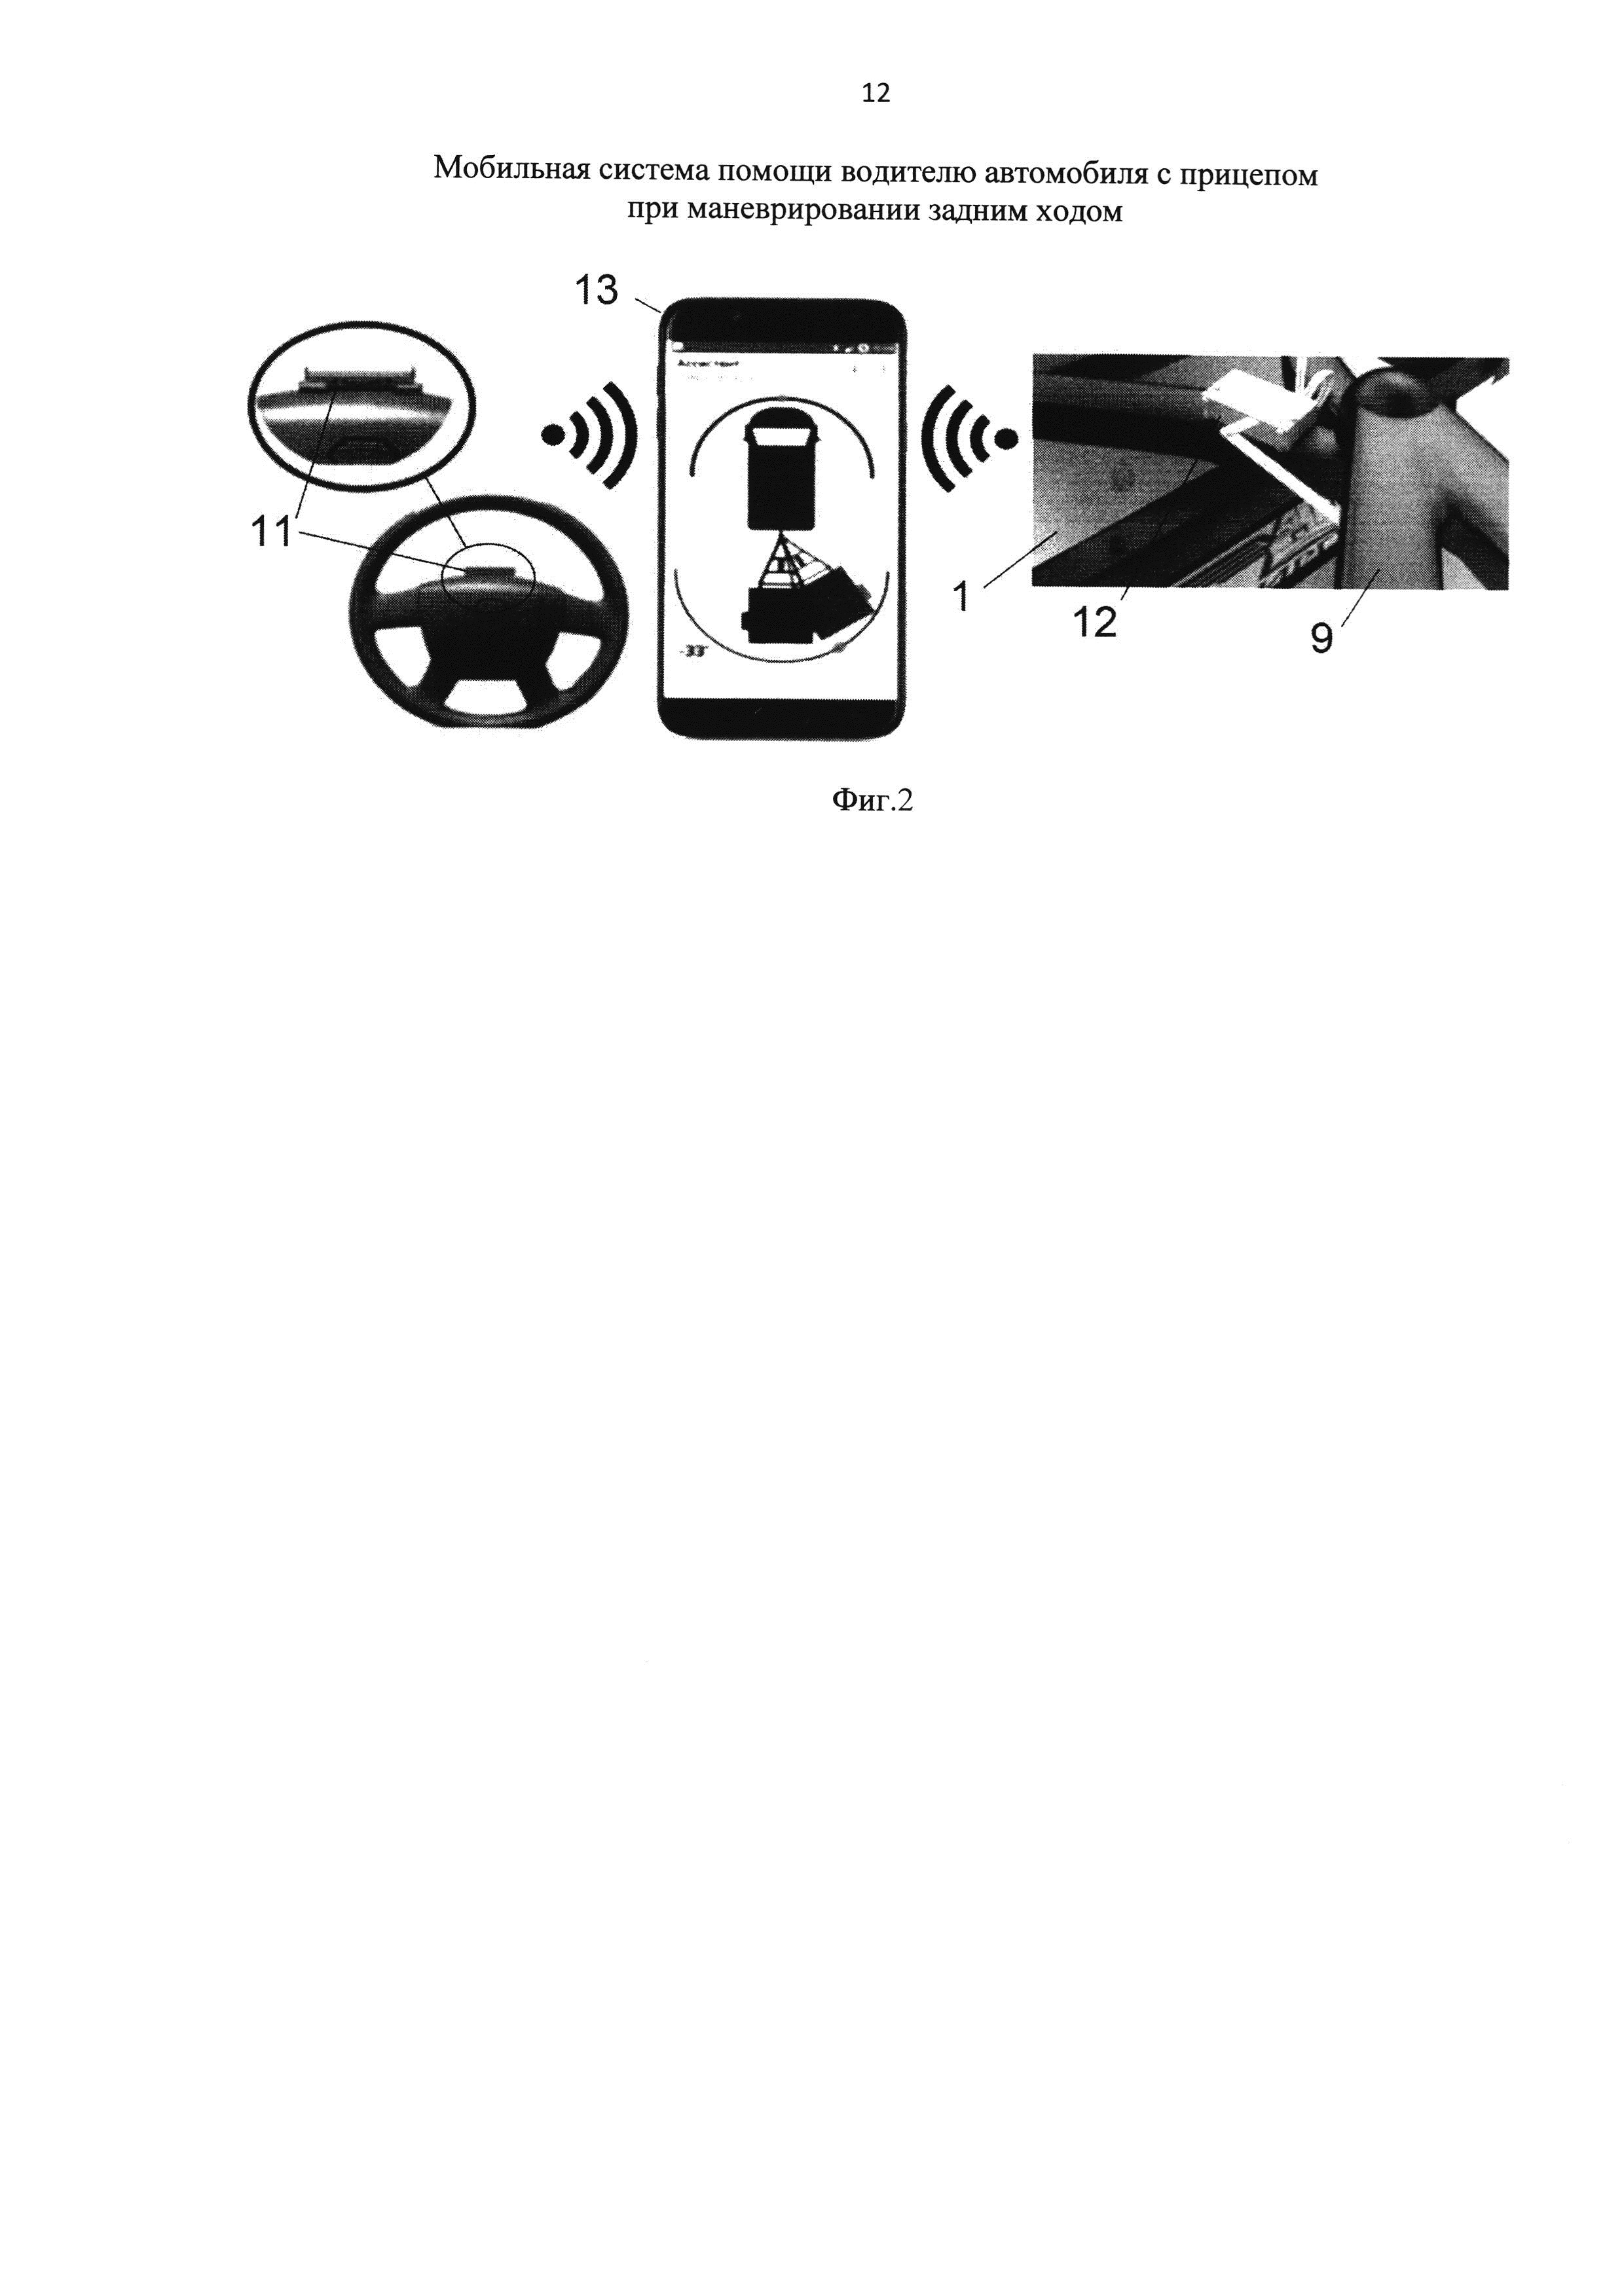 Мобильная система помощи водителю автомобиля с прицепом при маневрировании задним ходом